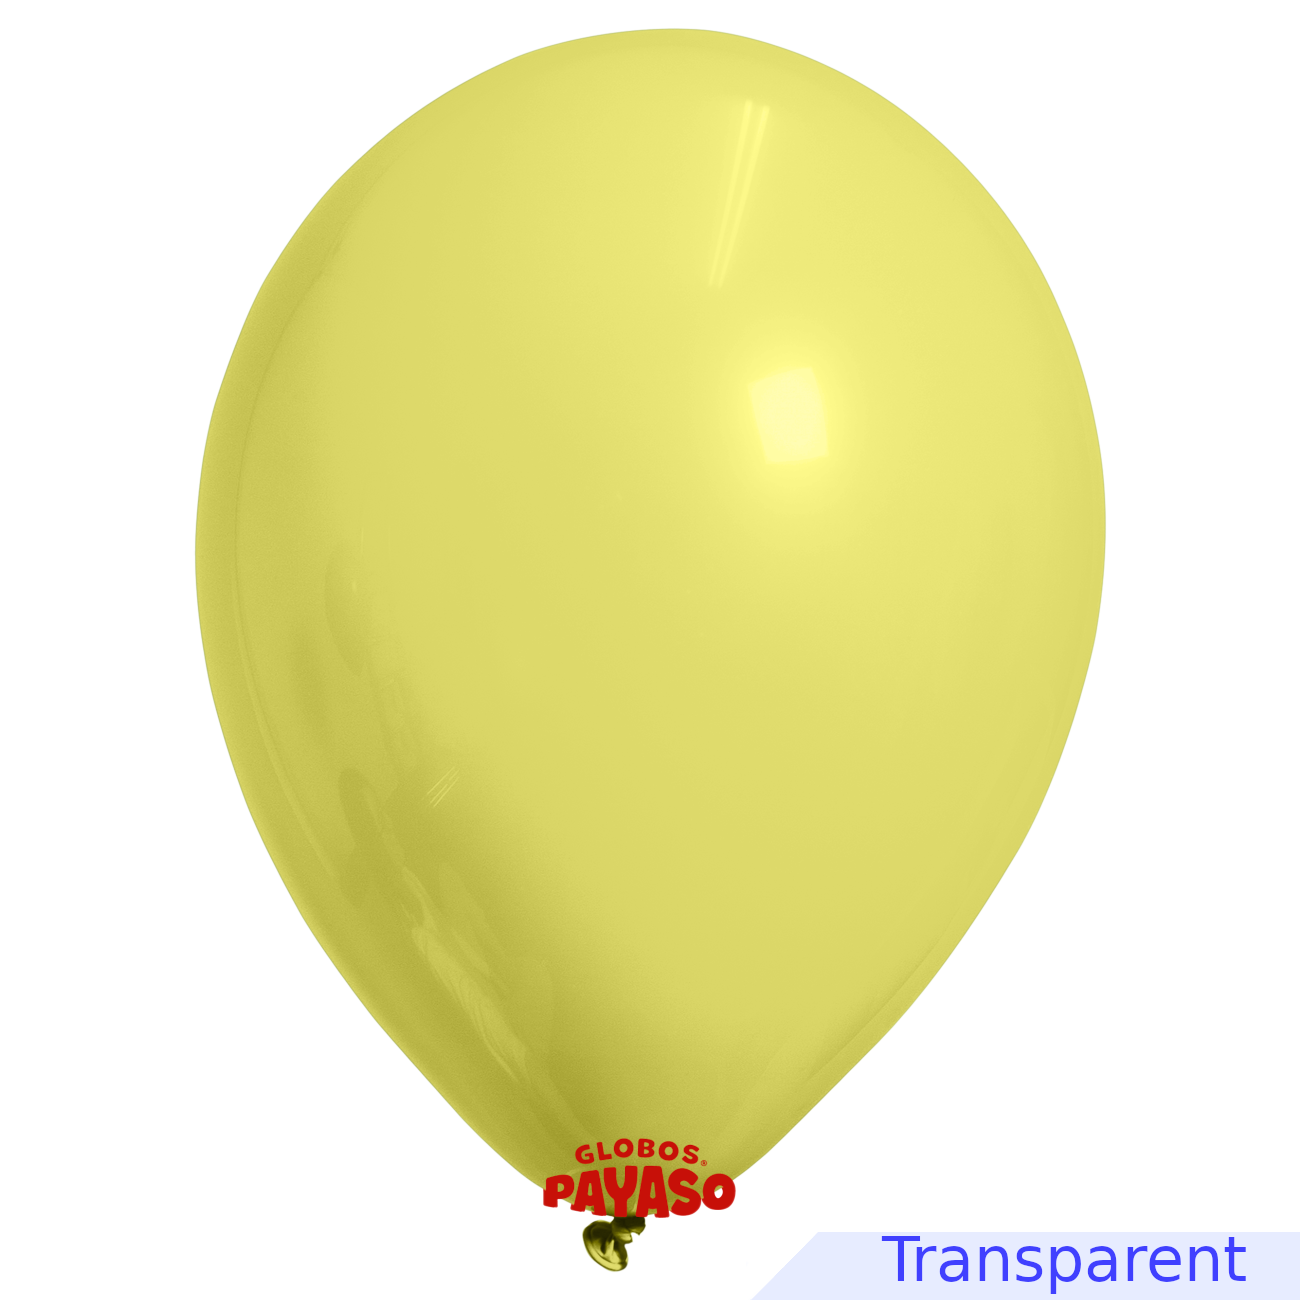 Globos Payaso / Unique 12" Jaune Translucide Décorateur Ballon